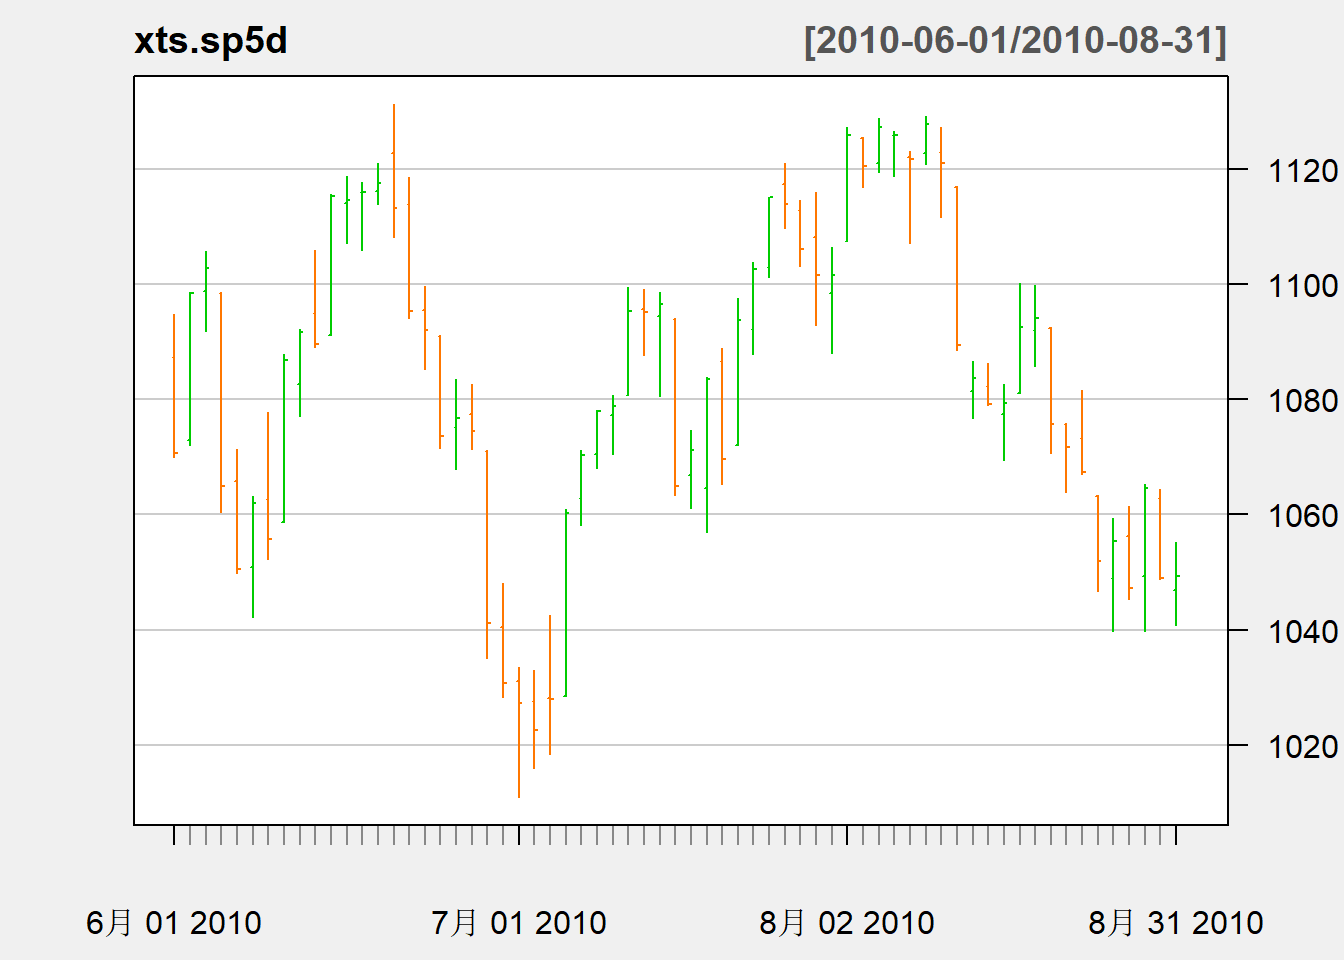 标普500指数序列日数据在2010年6-8月